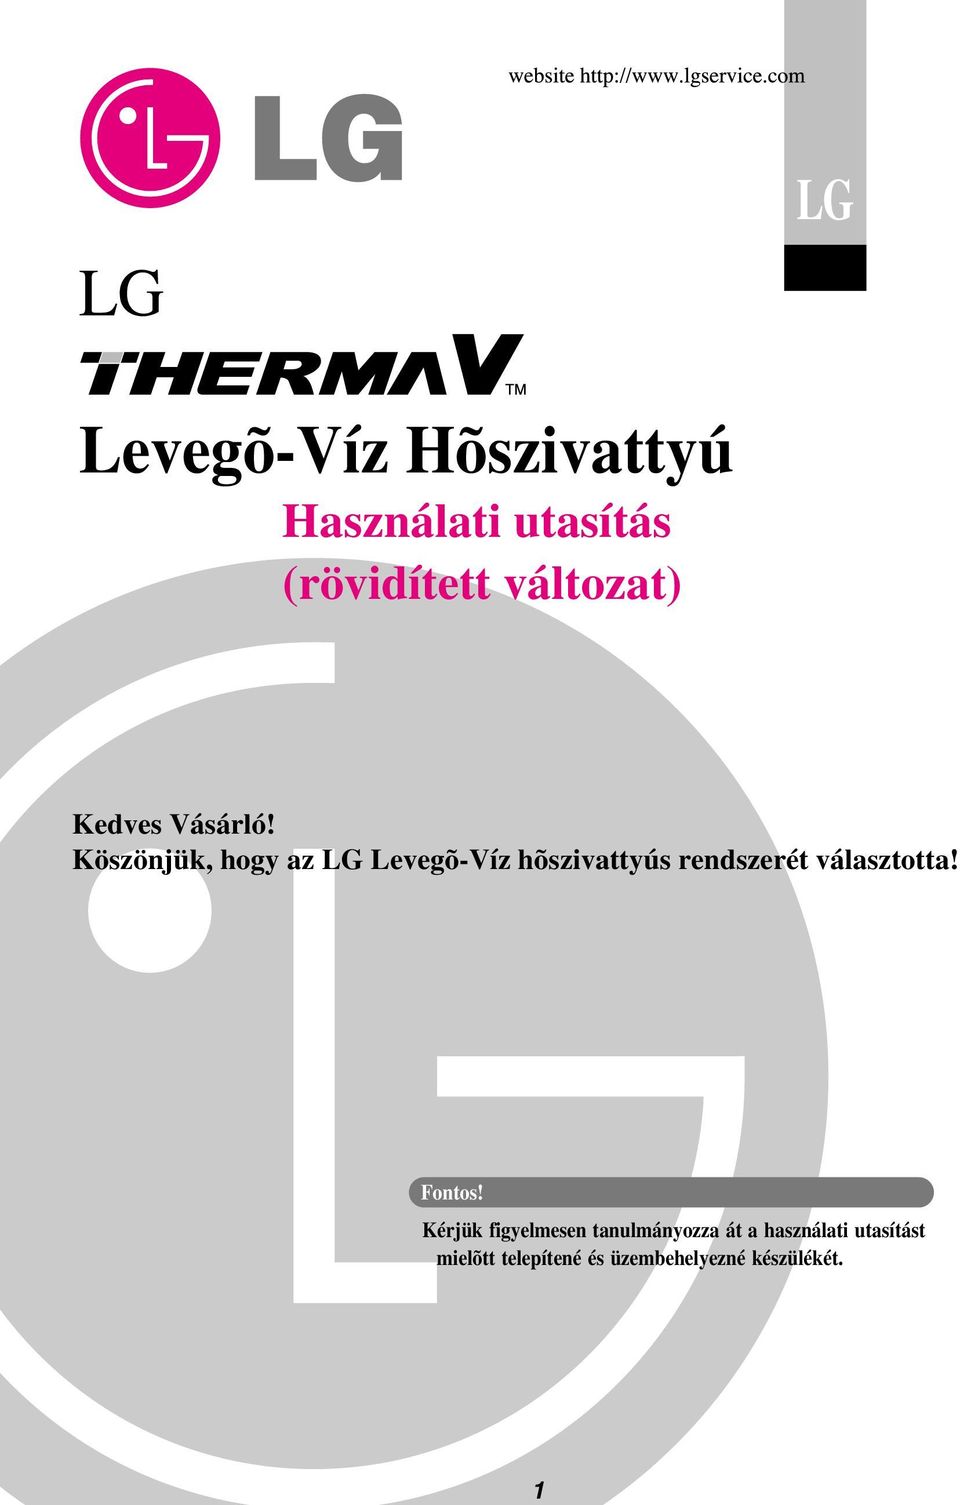 Köszönjük, hogy az LG Levegõ-Víz hõszivattyús rendszerét választotta!